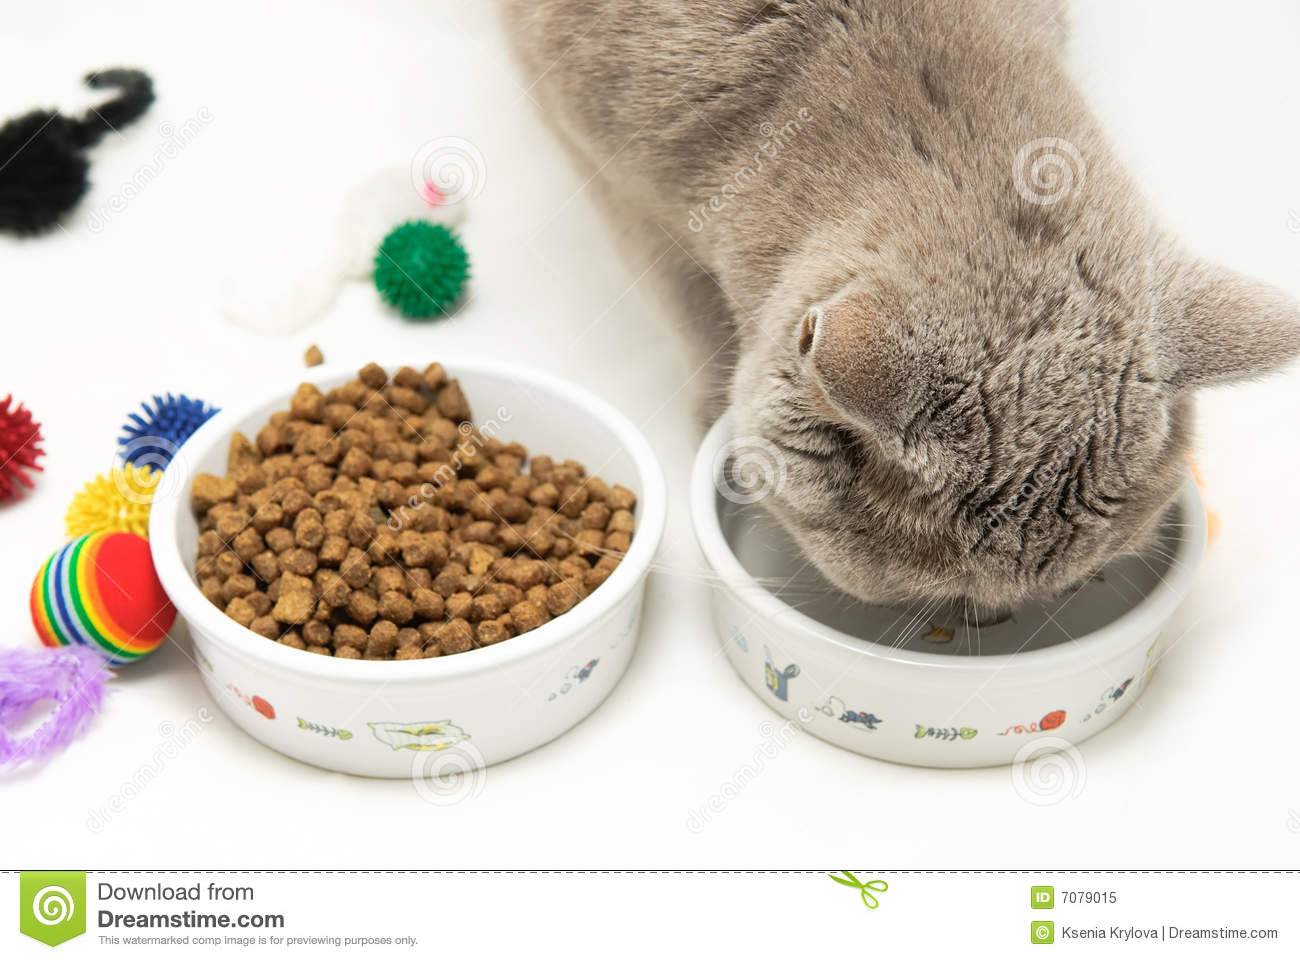 Каким кормом лучше кормить британского котенка: натуралкой, сухим или влажным, все за и против